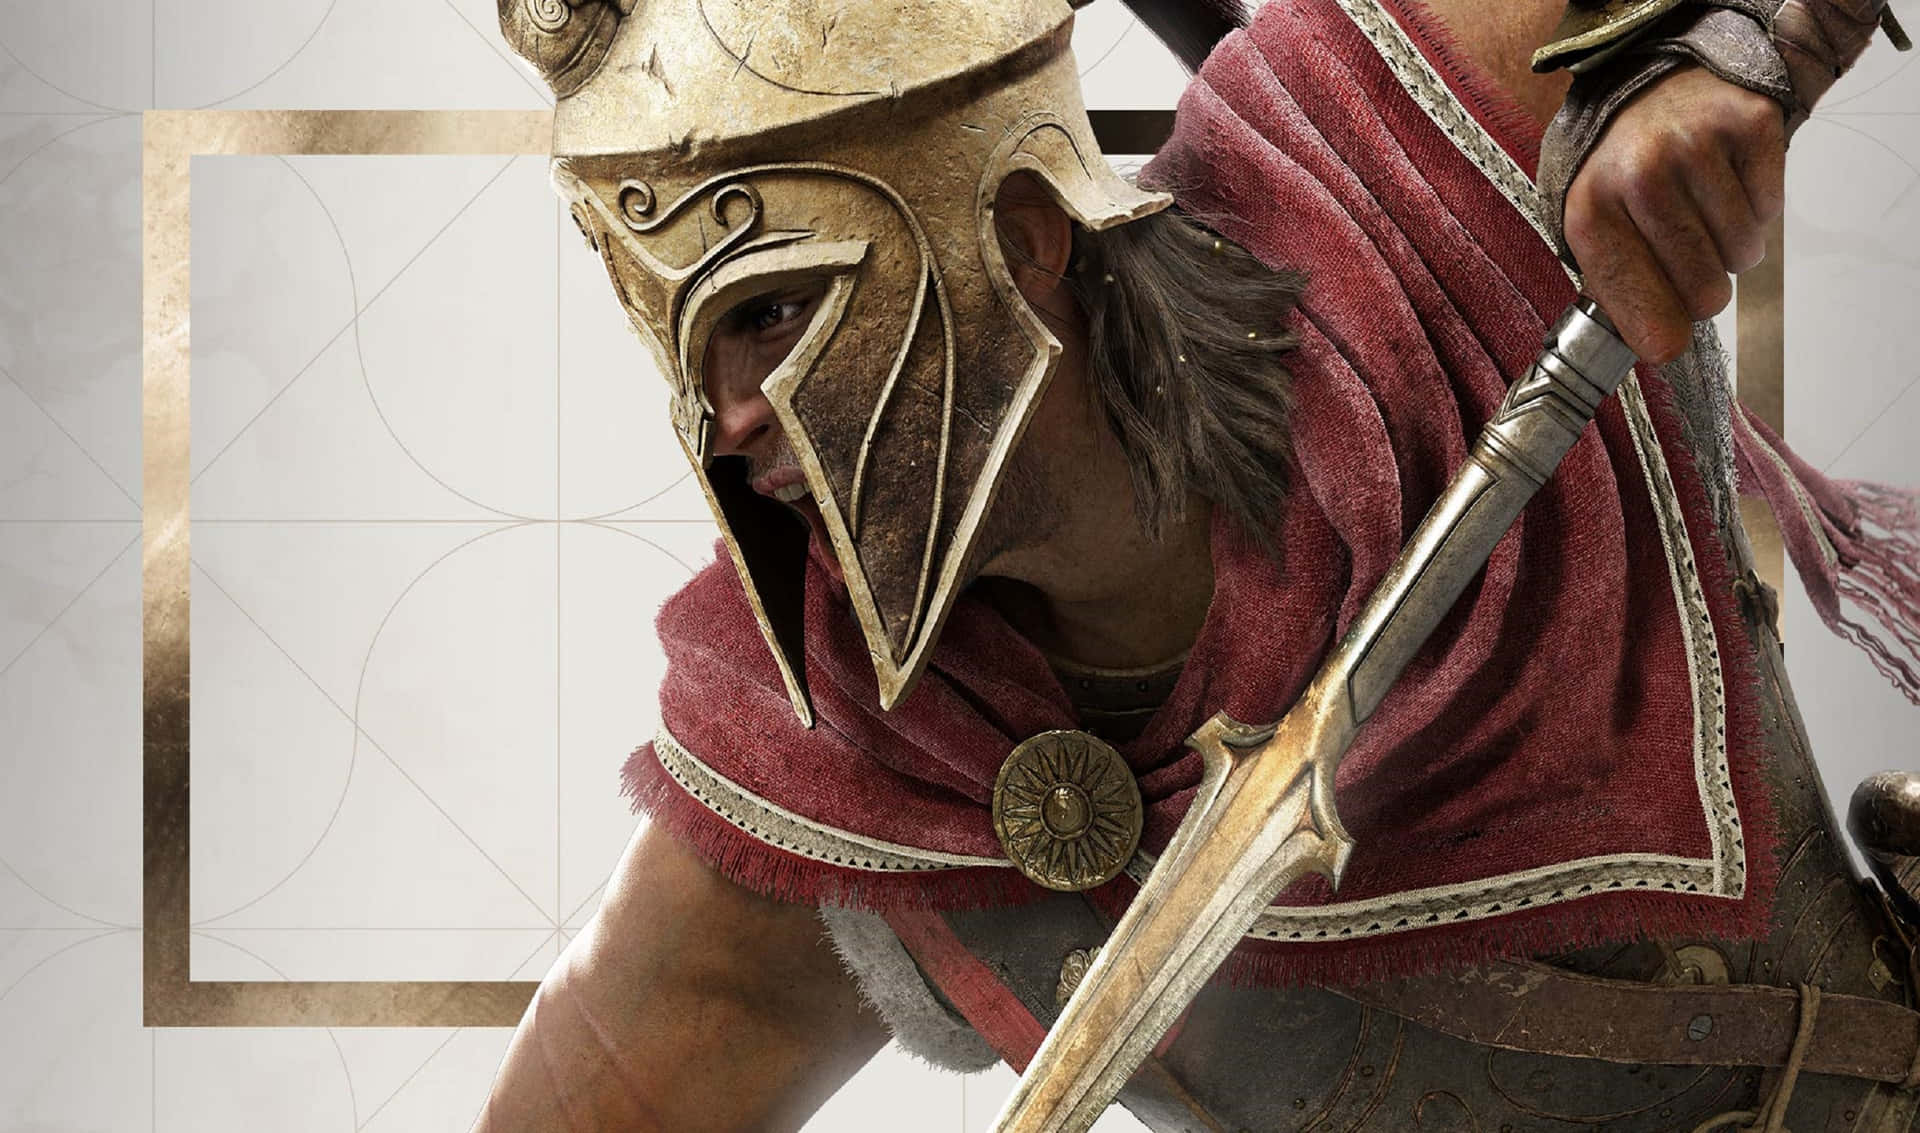 2440x1440bakgrundsbild På Alexios Från Assassin's Creed Odyssey.